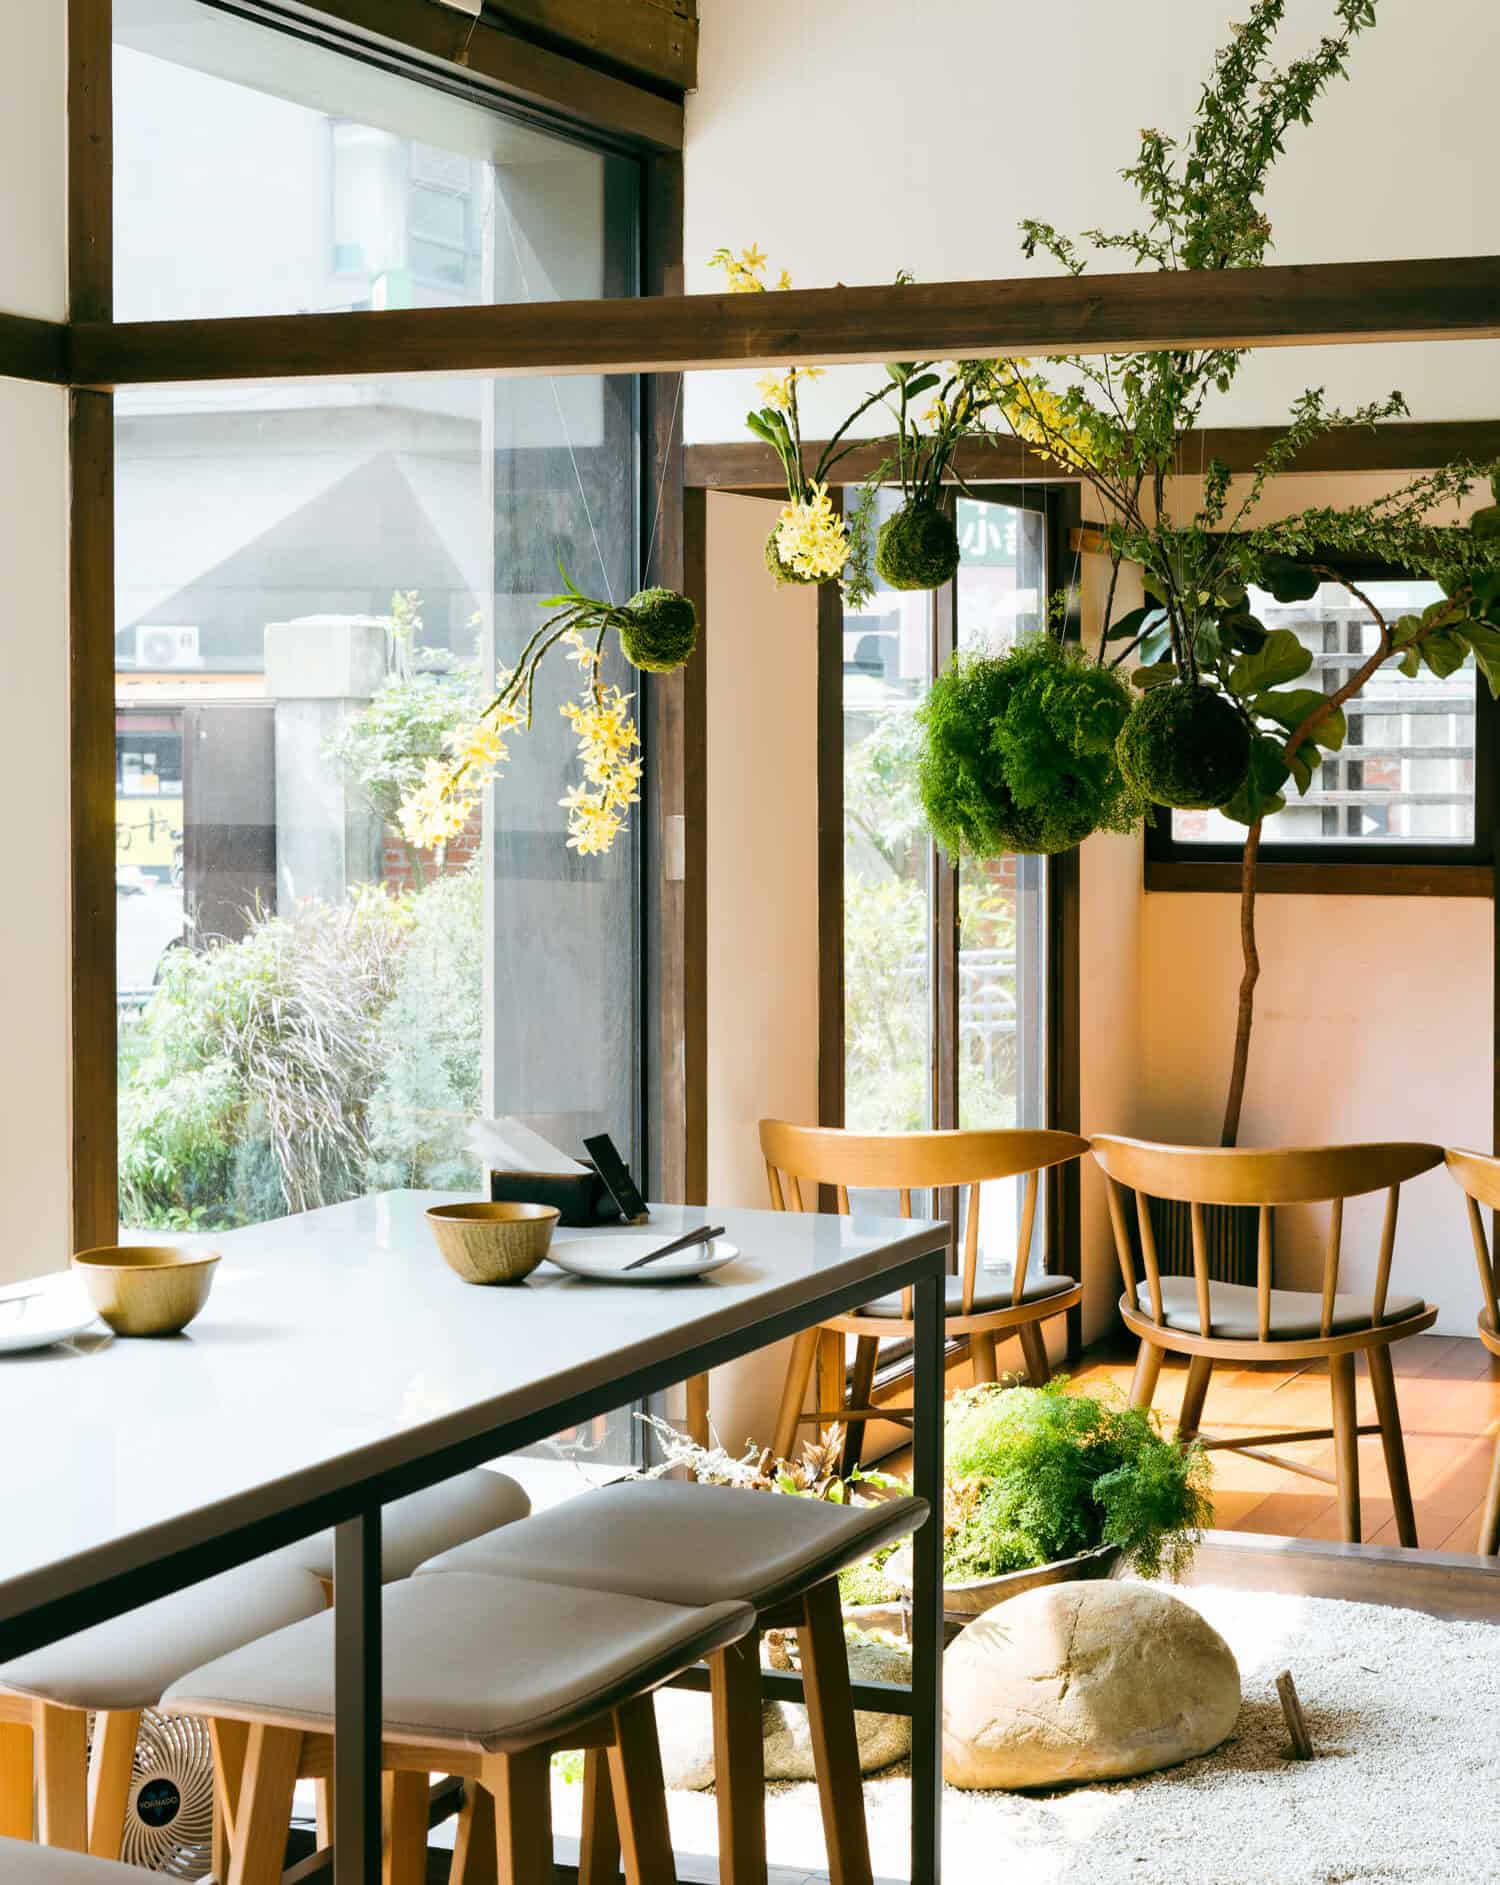 辛志平校長故居 TAIVII餐酒館：日式木造空間內享用台洋創意料理